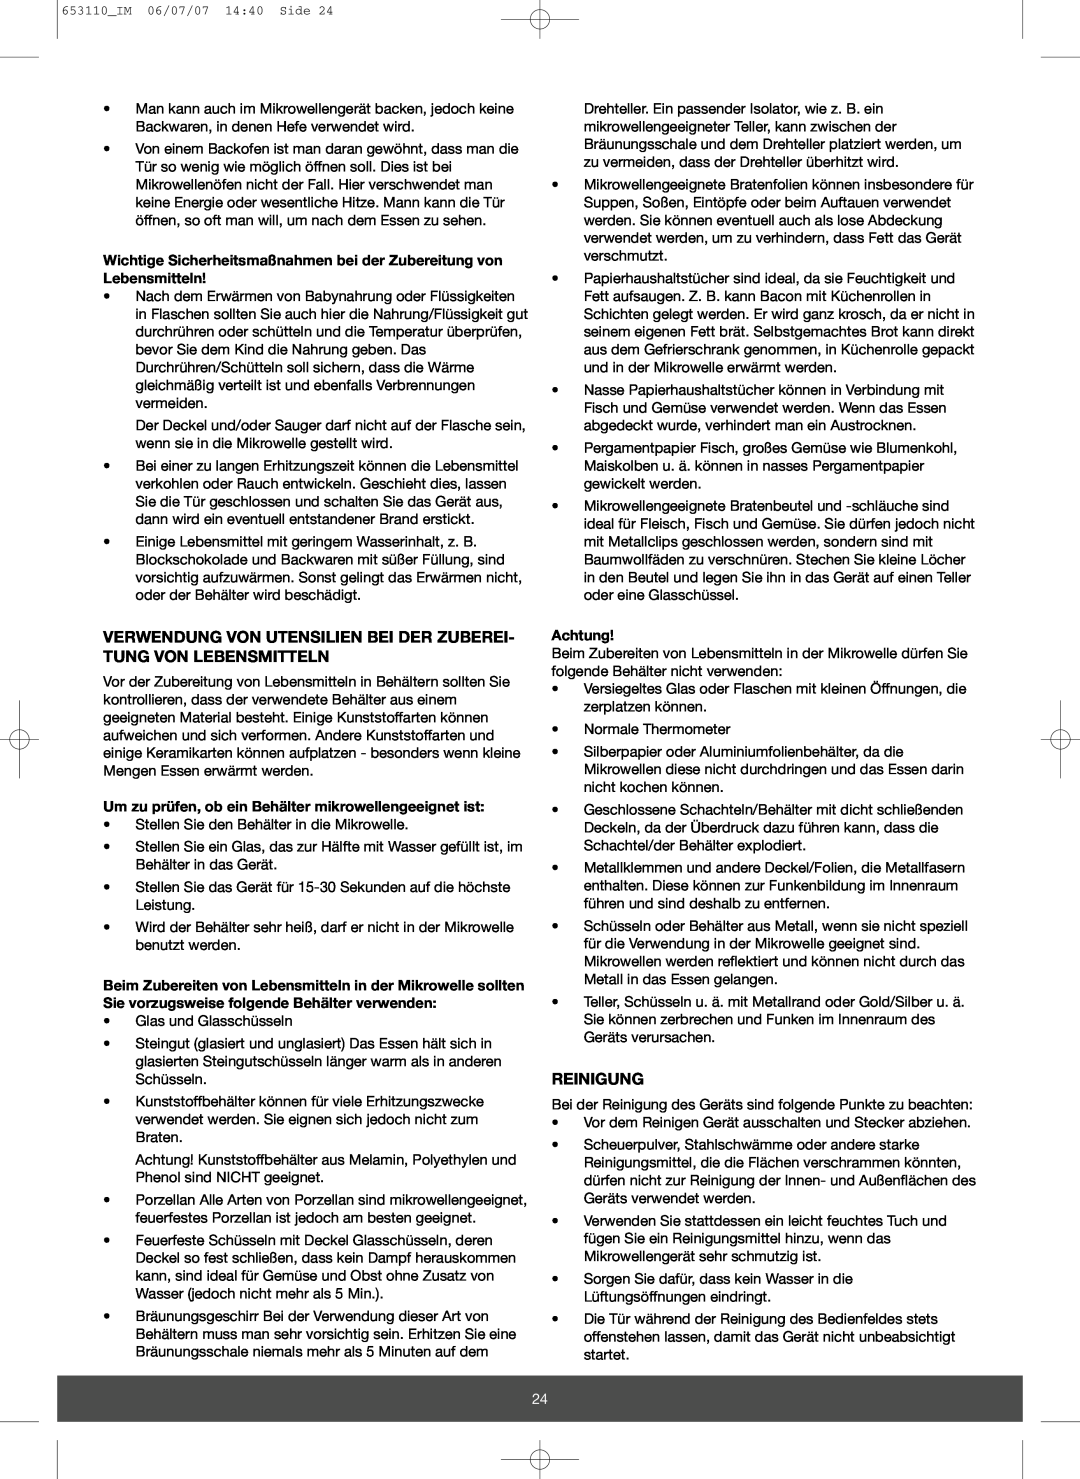 Melissa 653-111 manual Verwendung Von Utensilien Bei Der Zuberei- Tung Von Lebensmitteln, Reinigung, Achtung 